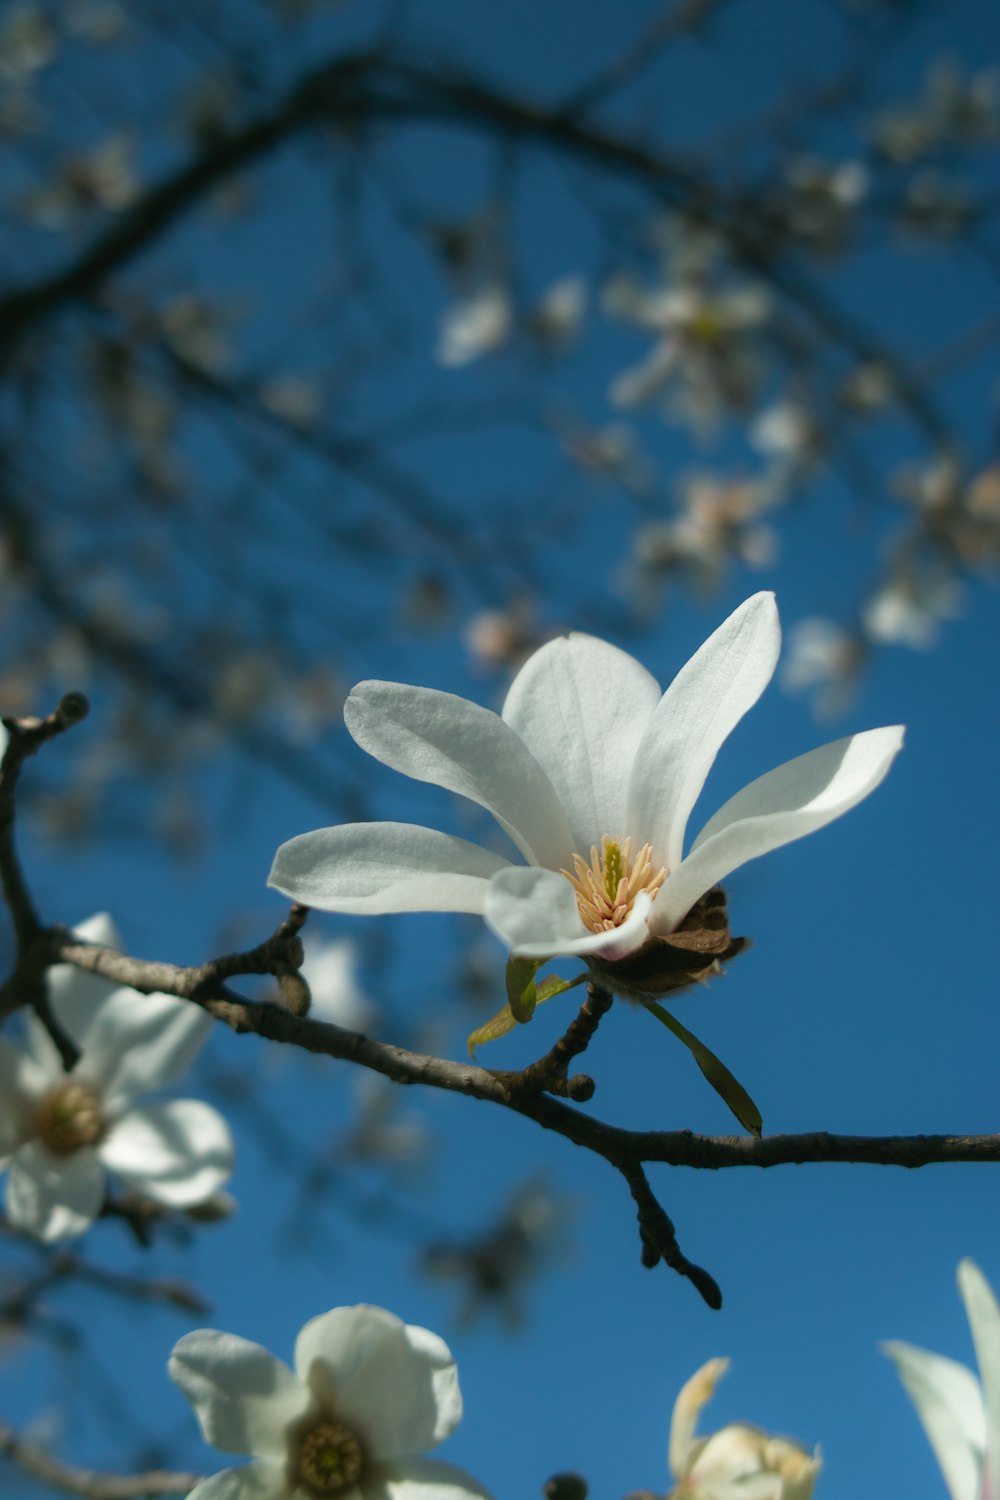 fiore bianco sul ramo marrone dell'albero durante il giorno